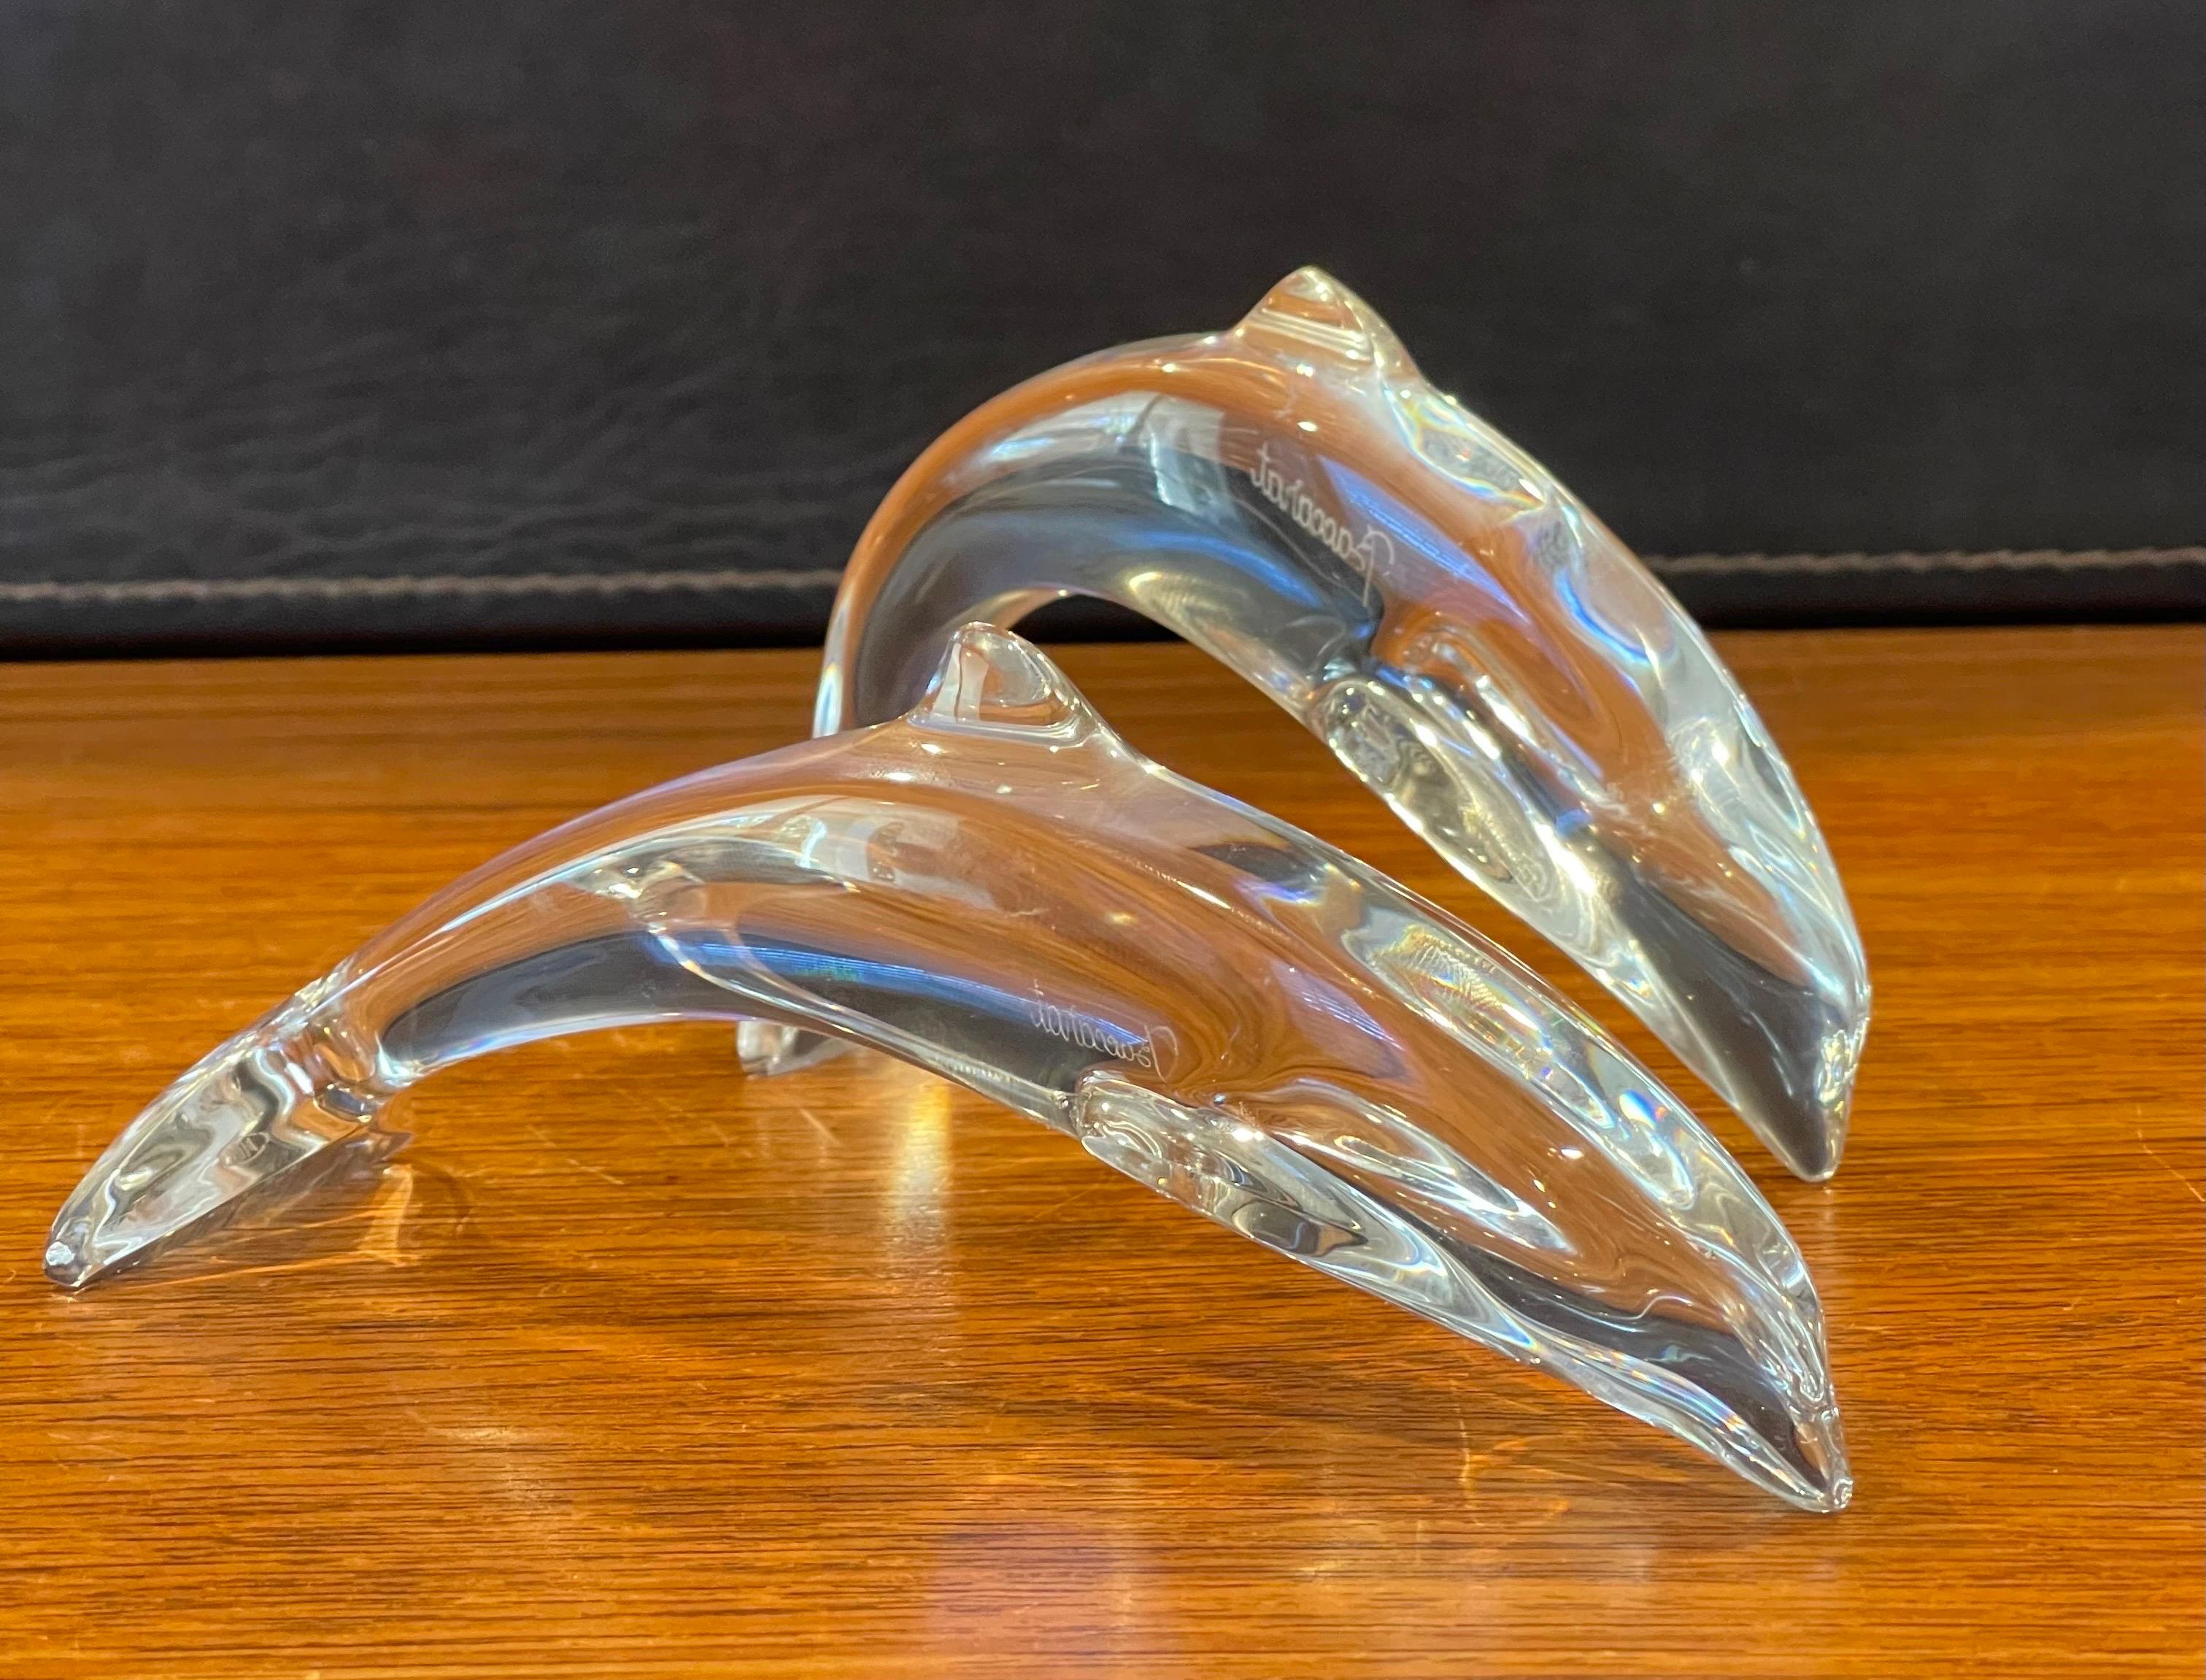 Magnifique paire de sculptures / presse-papiers en cristal stylisé de Baccarat, vers les années 1990. L'ensemble est en très bon état vintage, sans imperfections visibles et d'une grande clarté. Signées sur le côté, les pièces mesurent environ 6,5